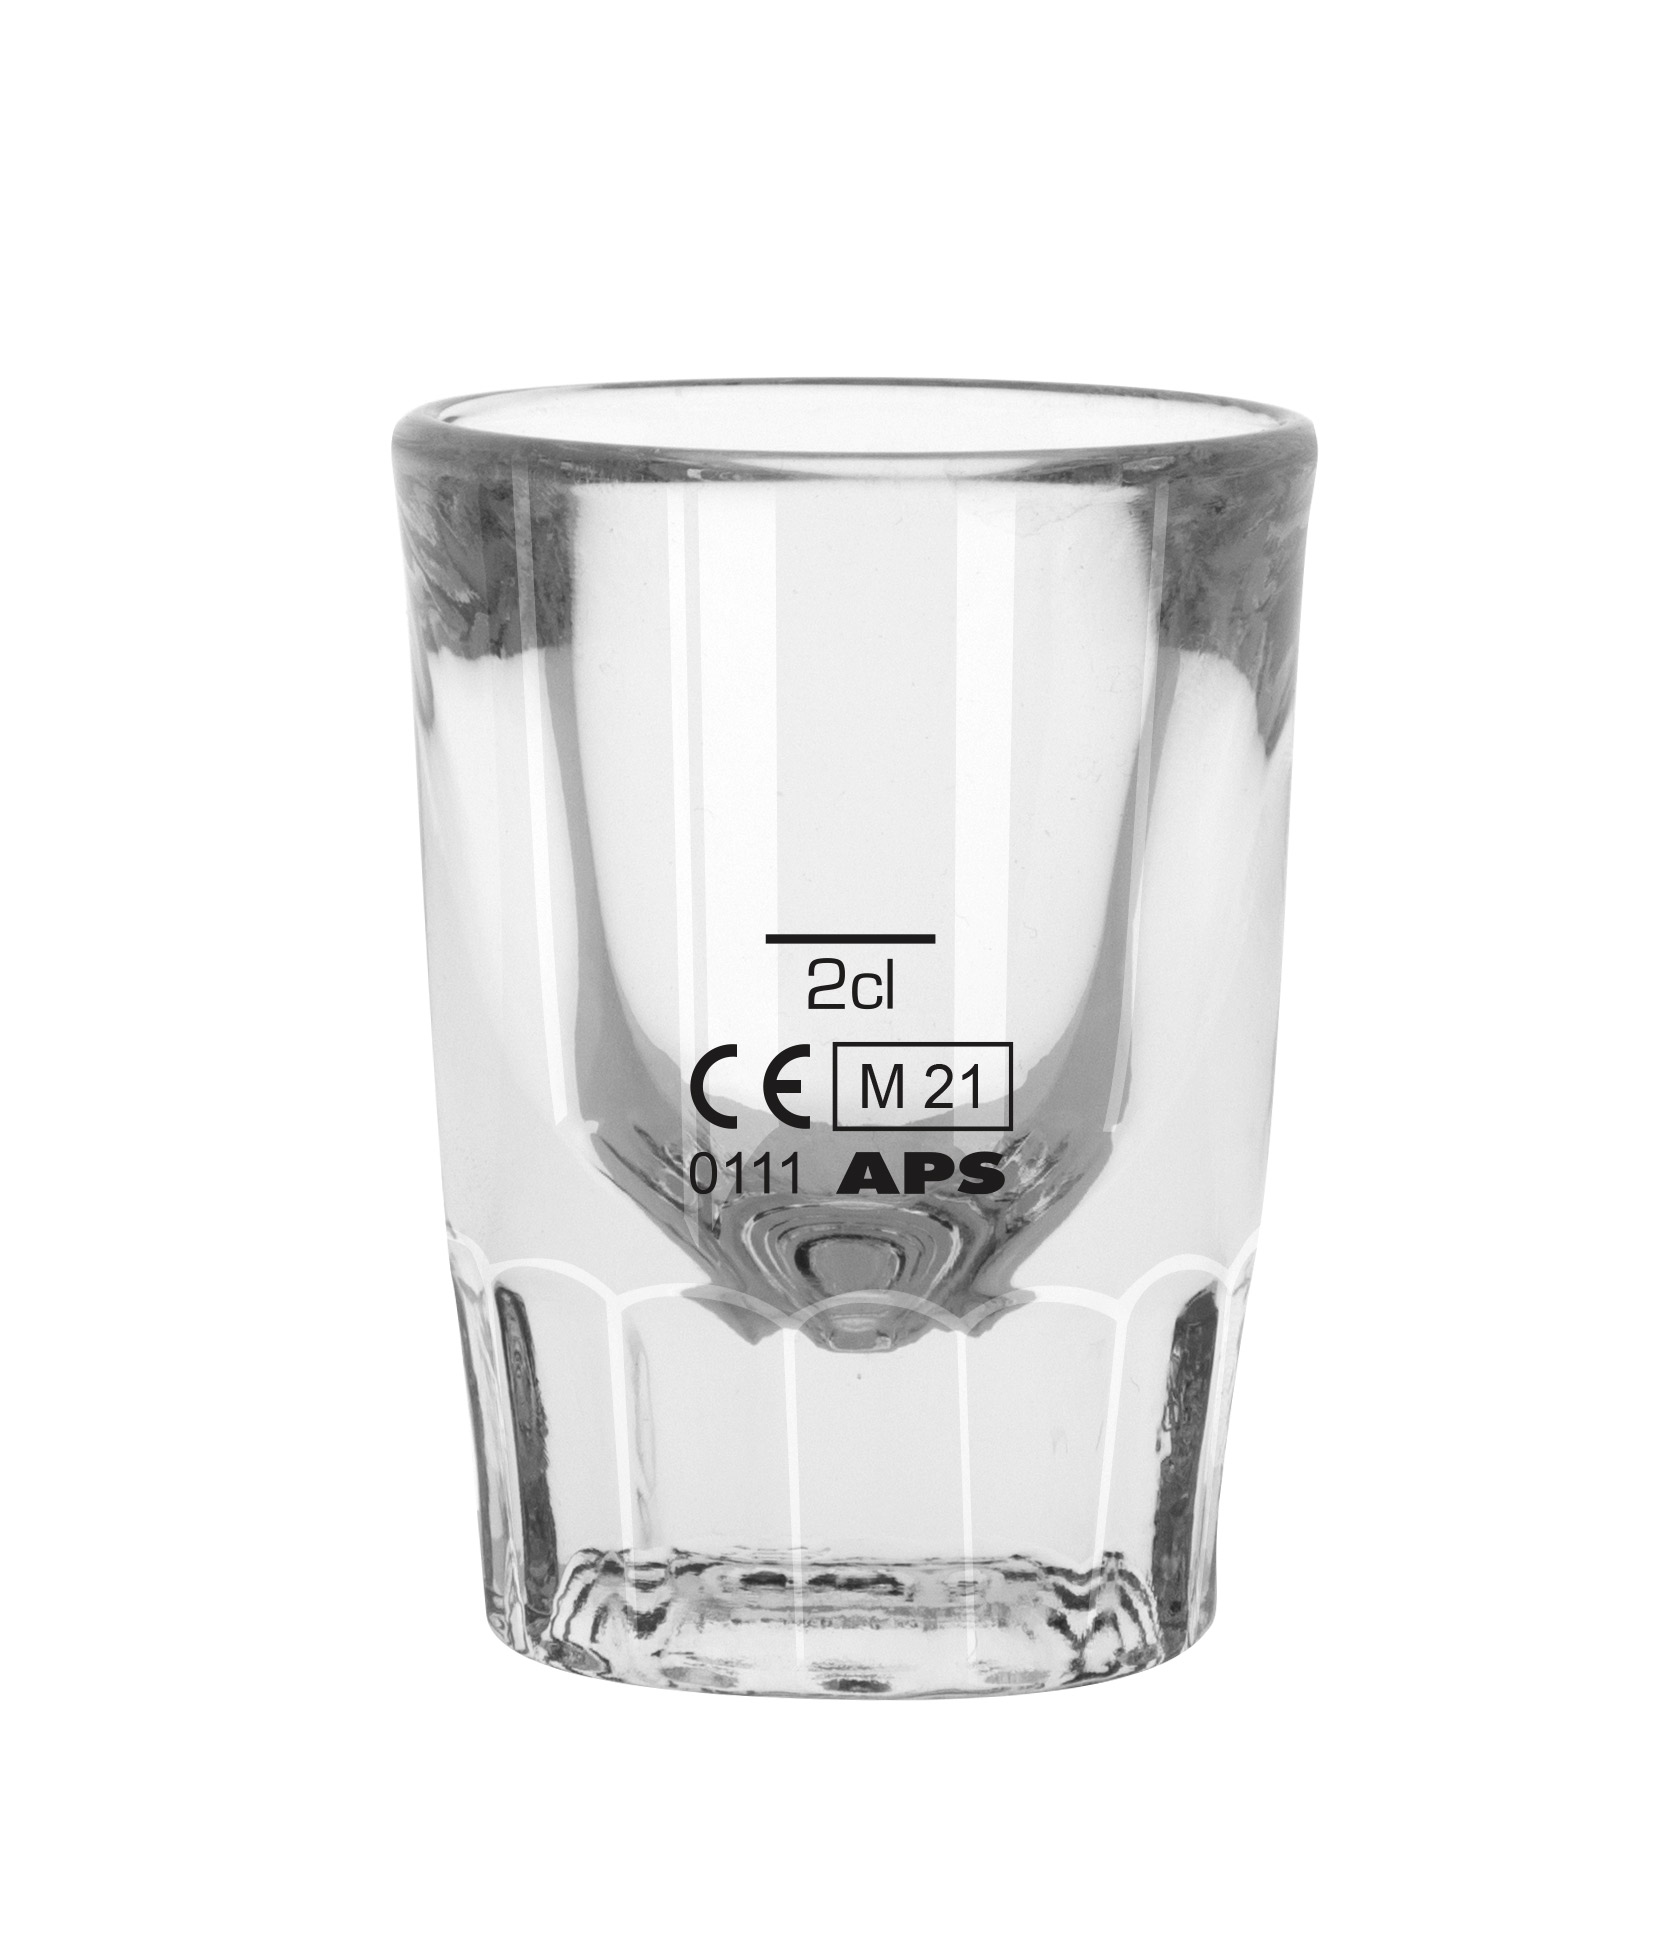 Shotglas, Libbey, Whiskey Pressed - Eichstrich: 2cl